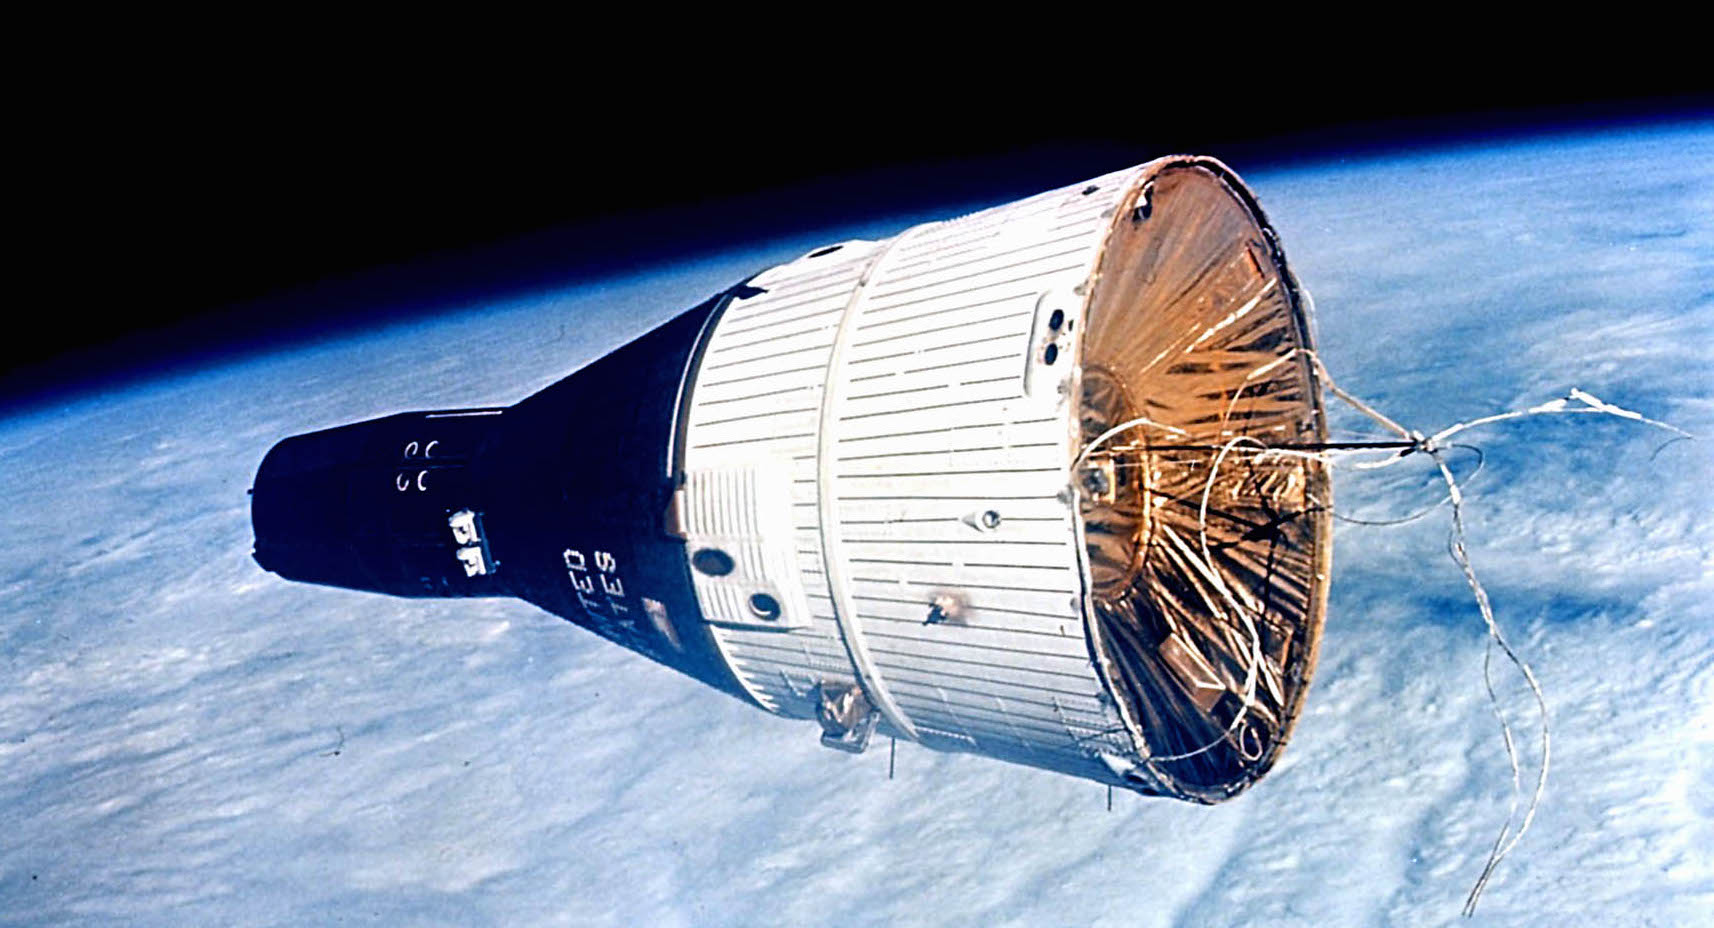 15 décembre 1965 : premier rendez-vous spatial réussi de l'histoire